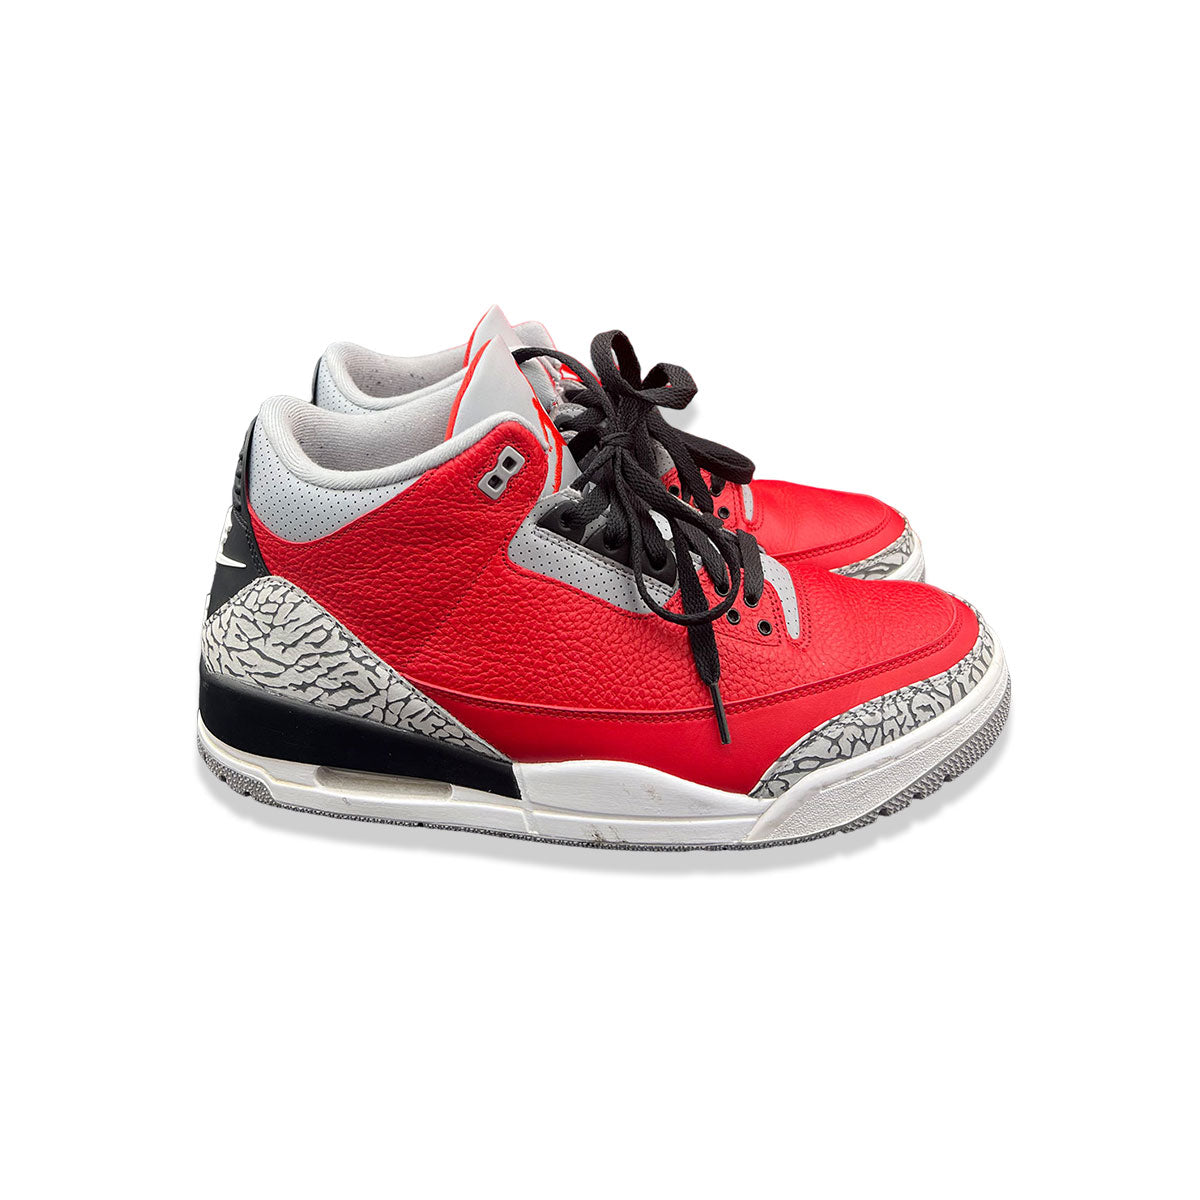 Air Jordan 3 Retro SE Unite Fire Red size 13 (Pre-Owned) - KickzStore